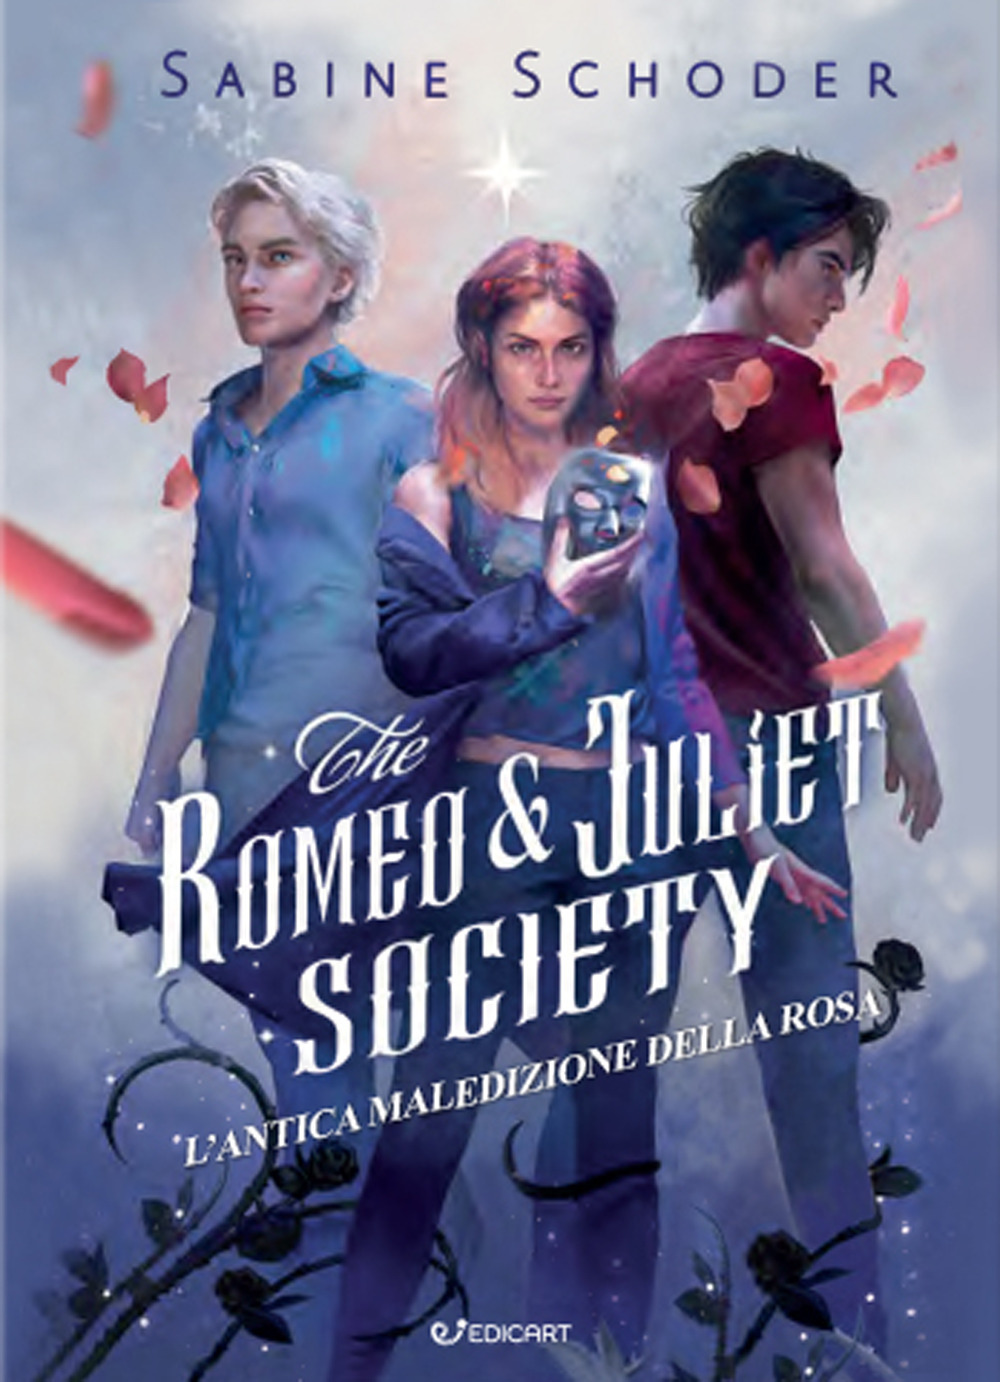 L'antica maledizione della rosa. The Romeo & Juliet society